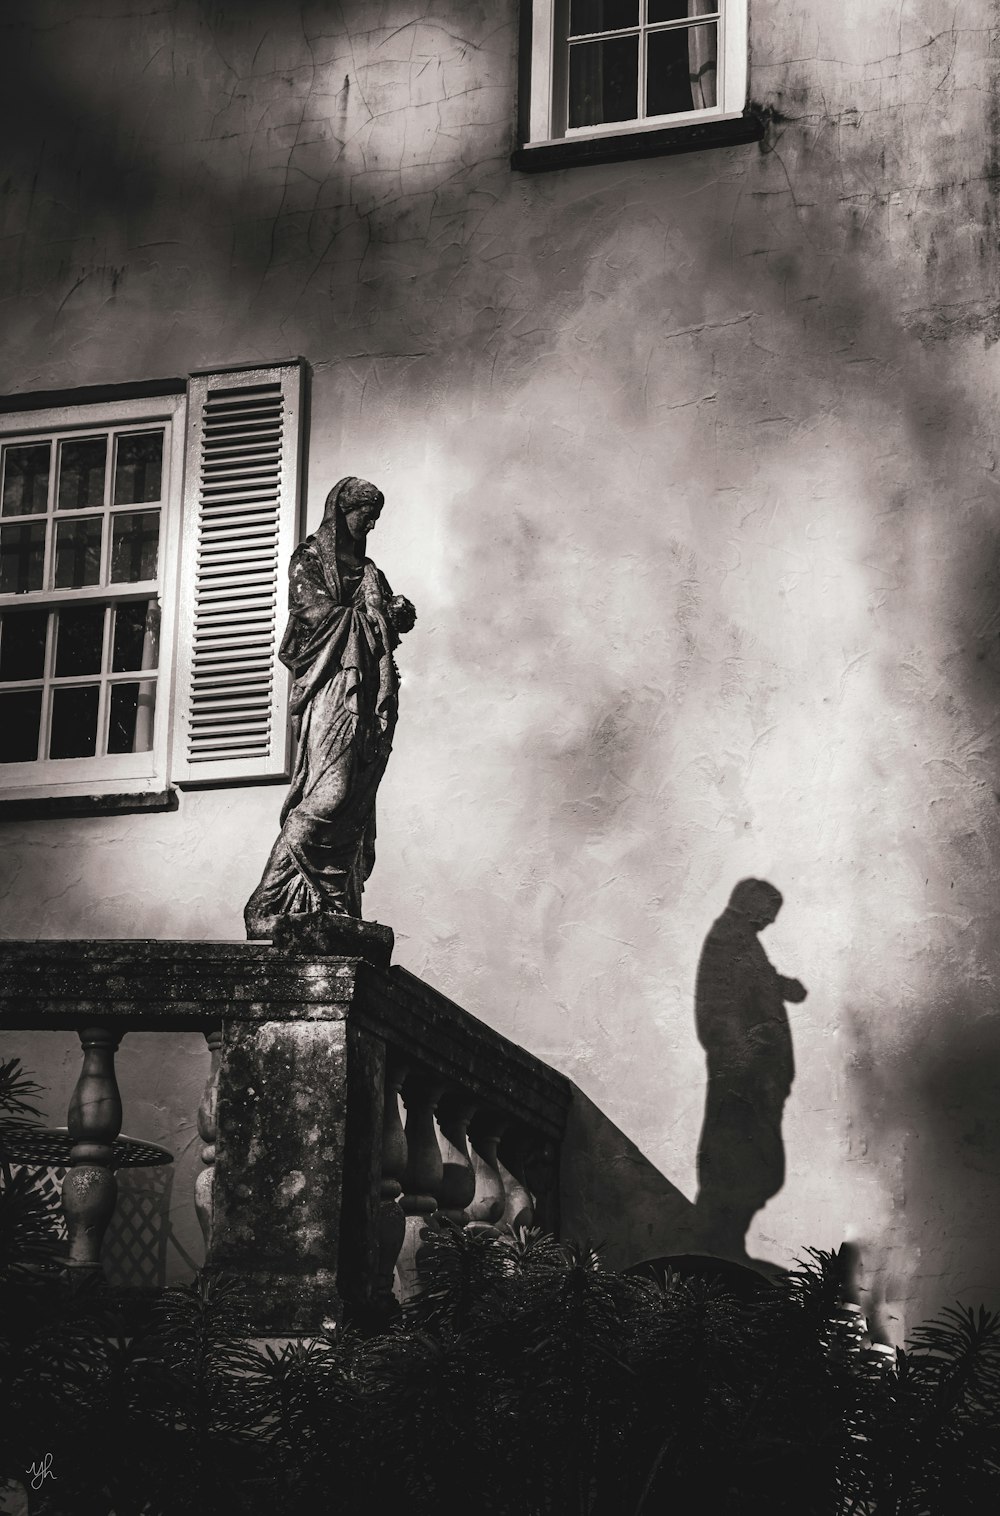 une photo en noir et blanc d’une statue devant un bâtiment